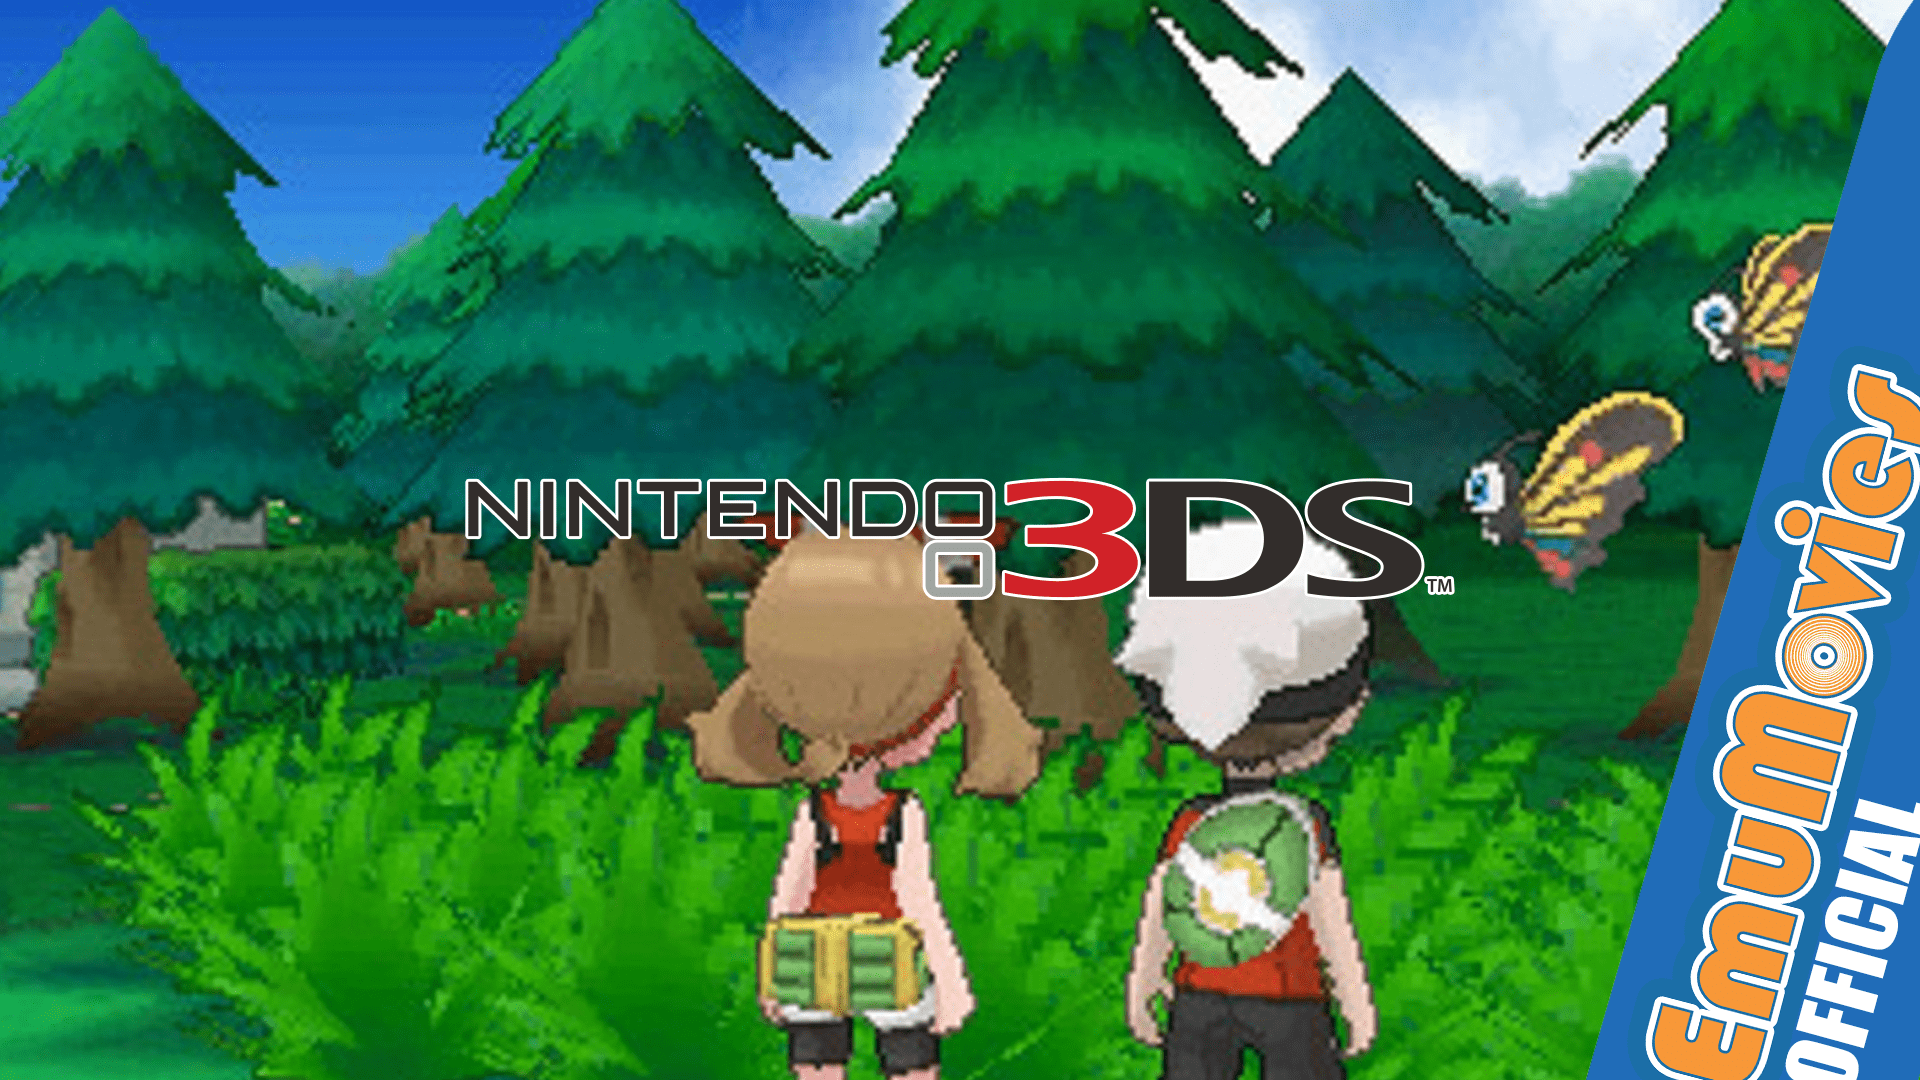 Inazuma Eleven GO: Shadow, Jogos para a Nintendo 3DS